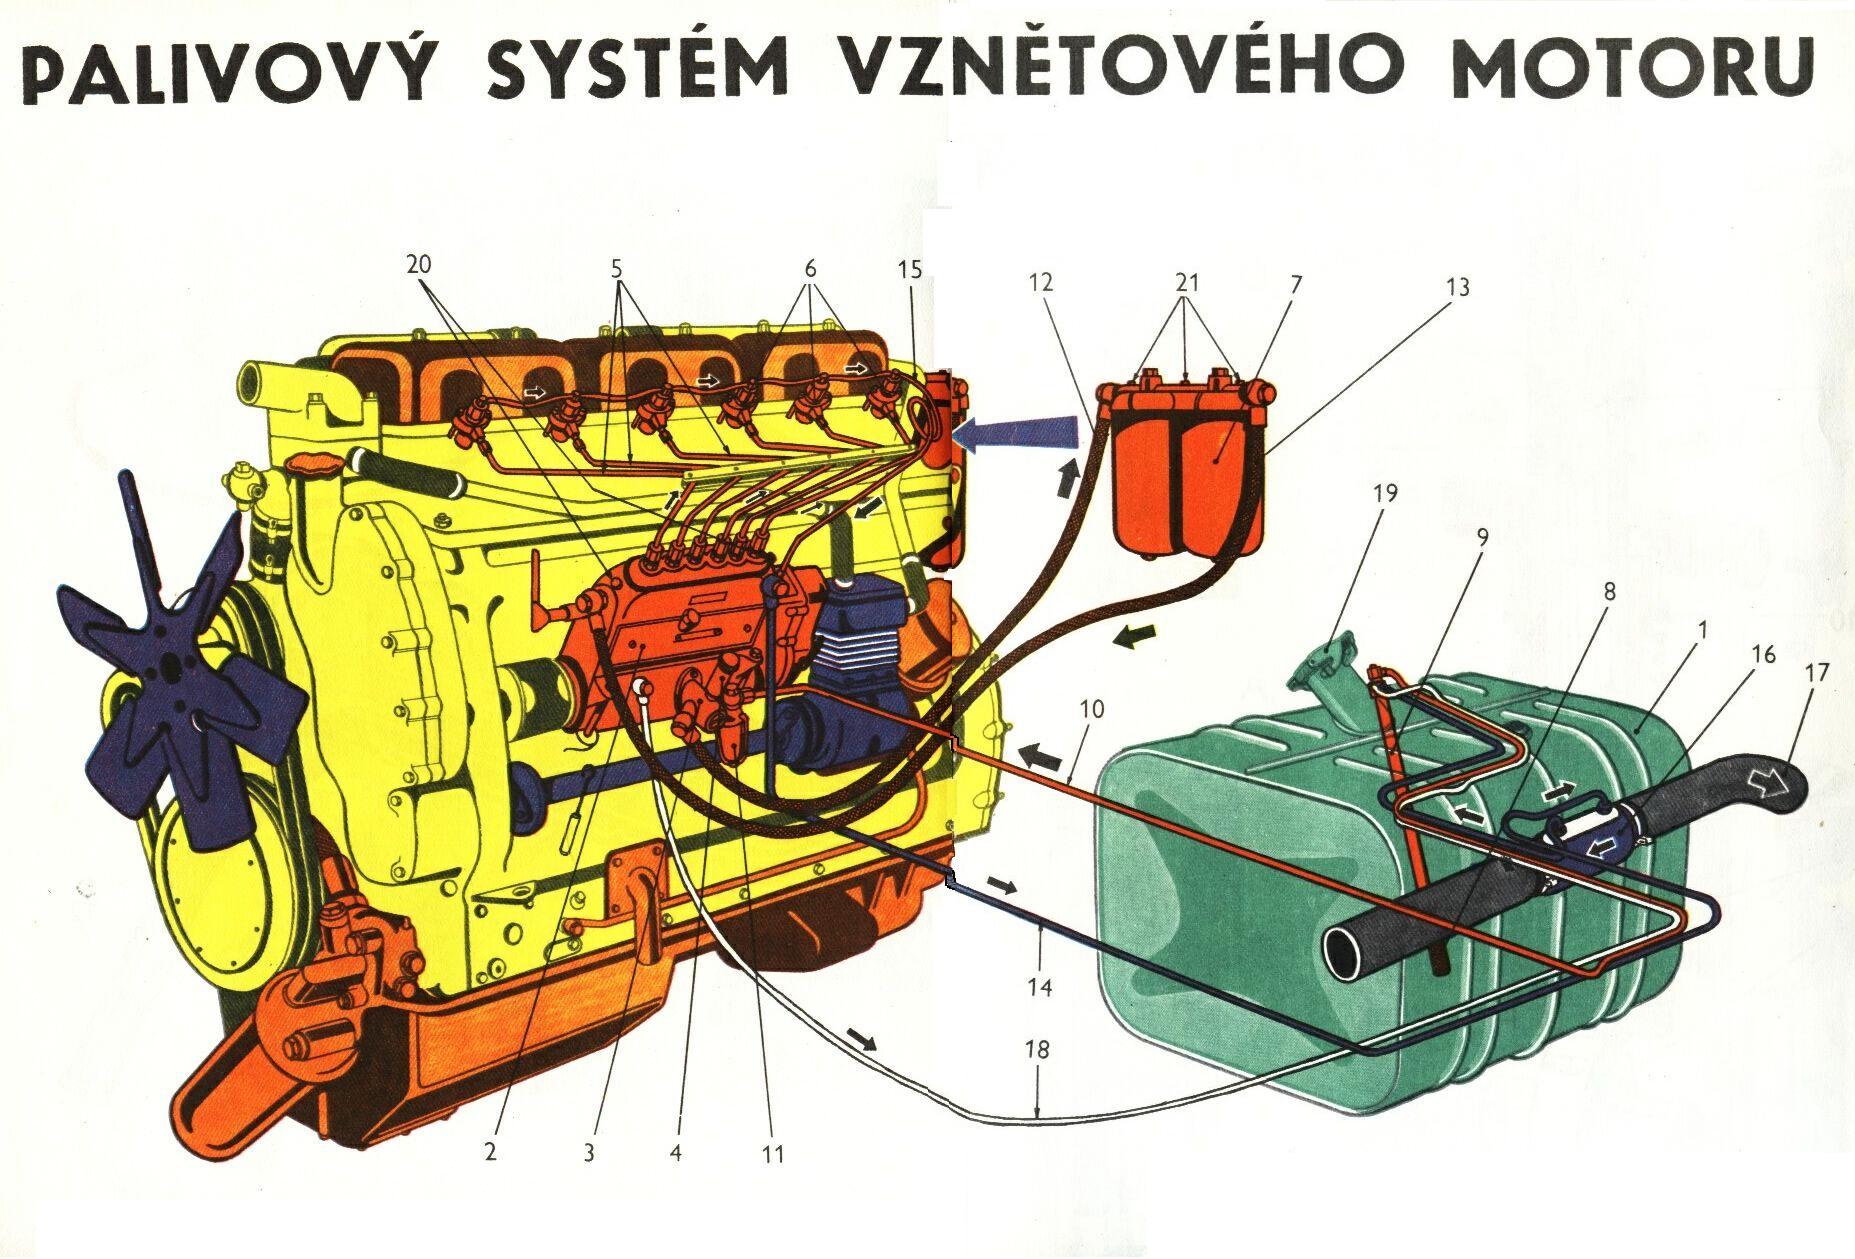 Palivový systém vznětového motoru 